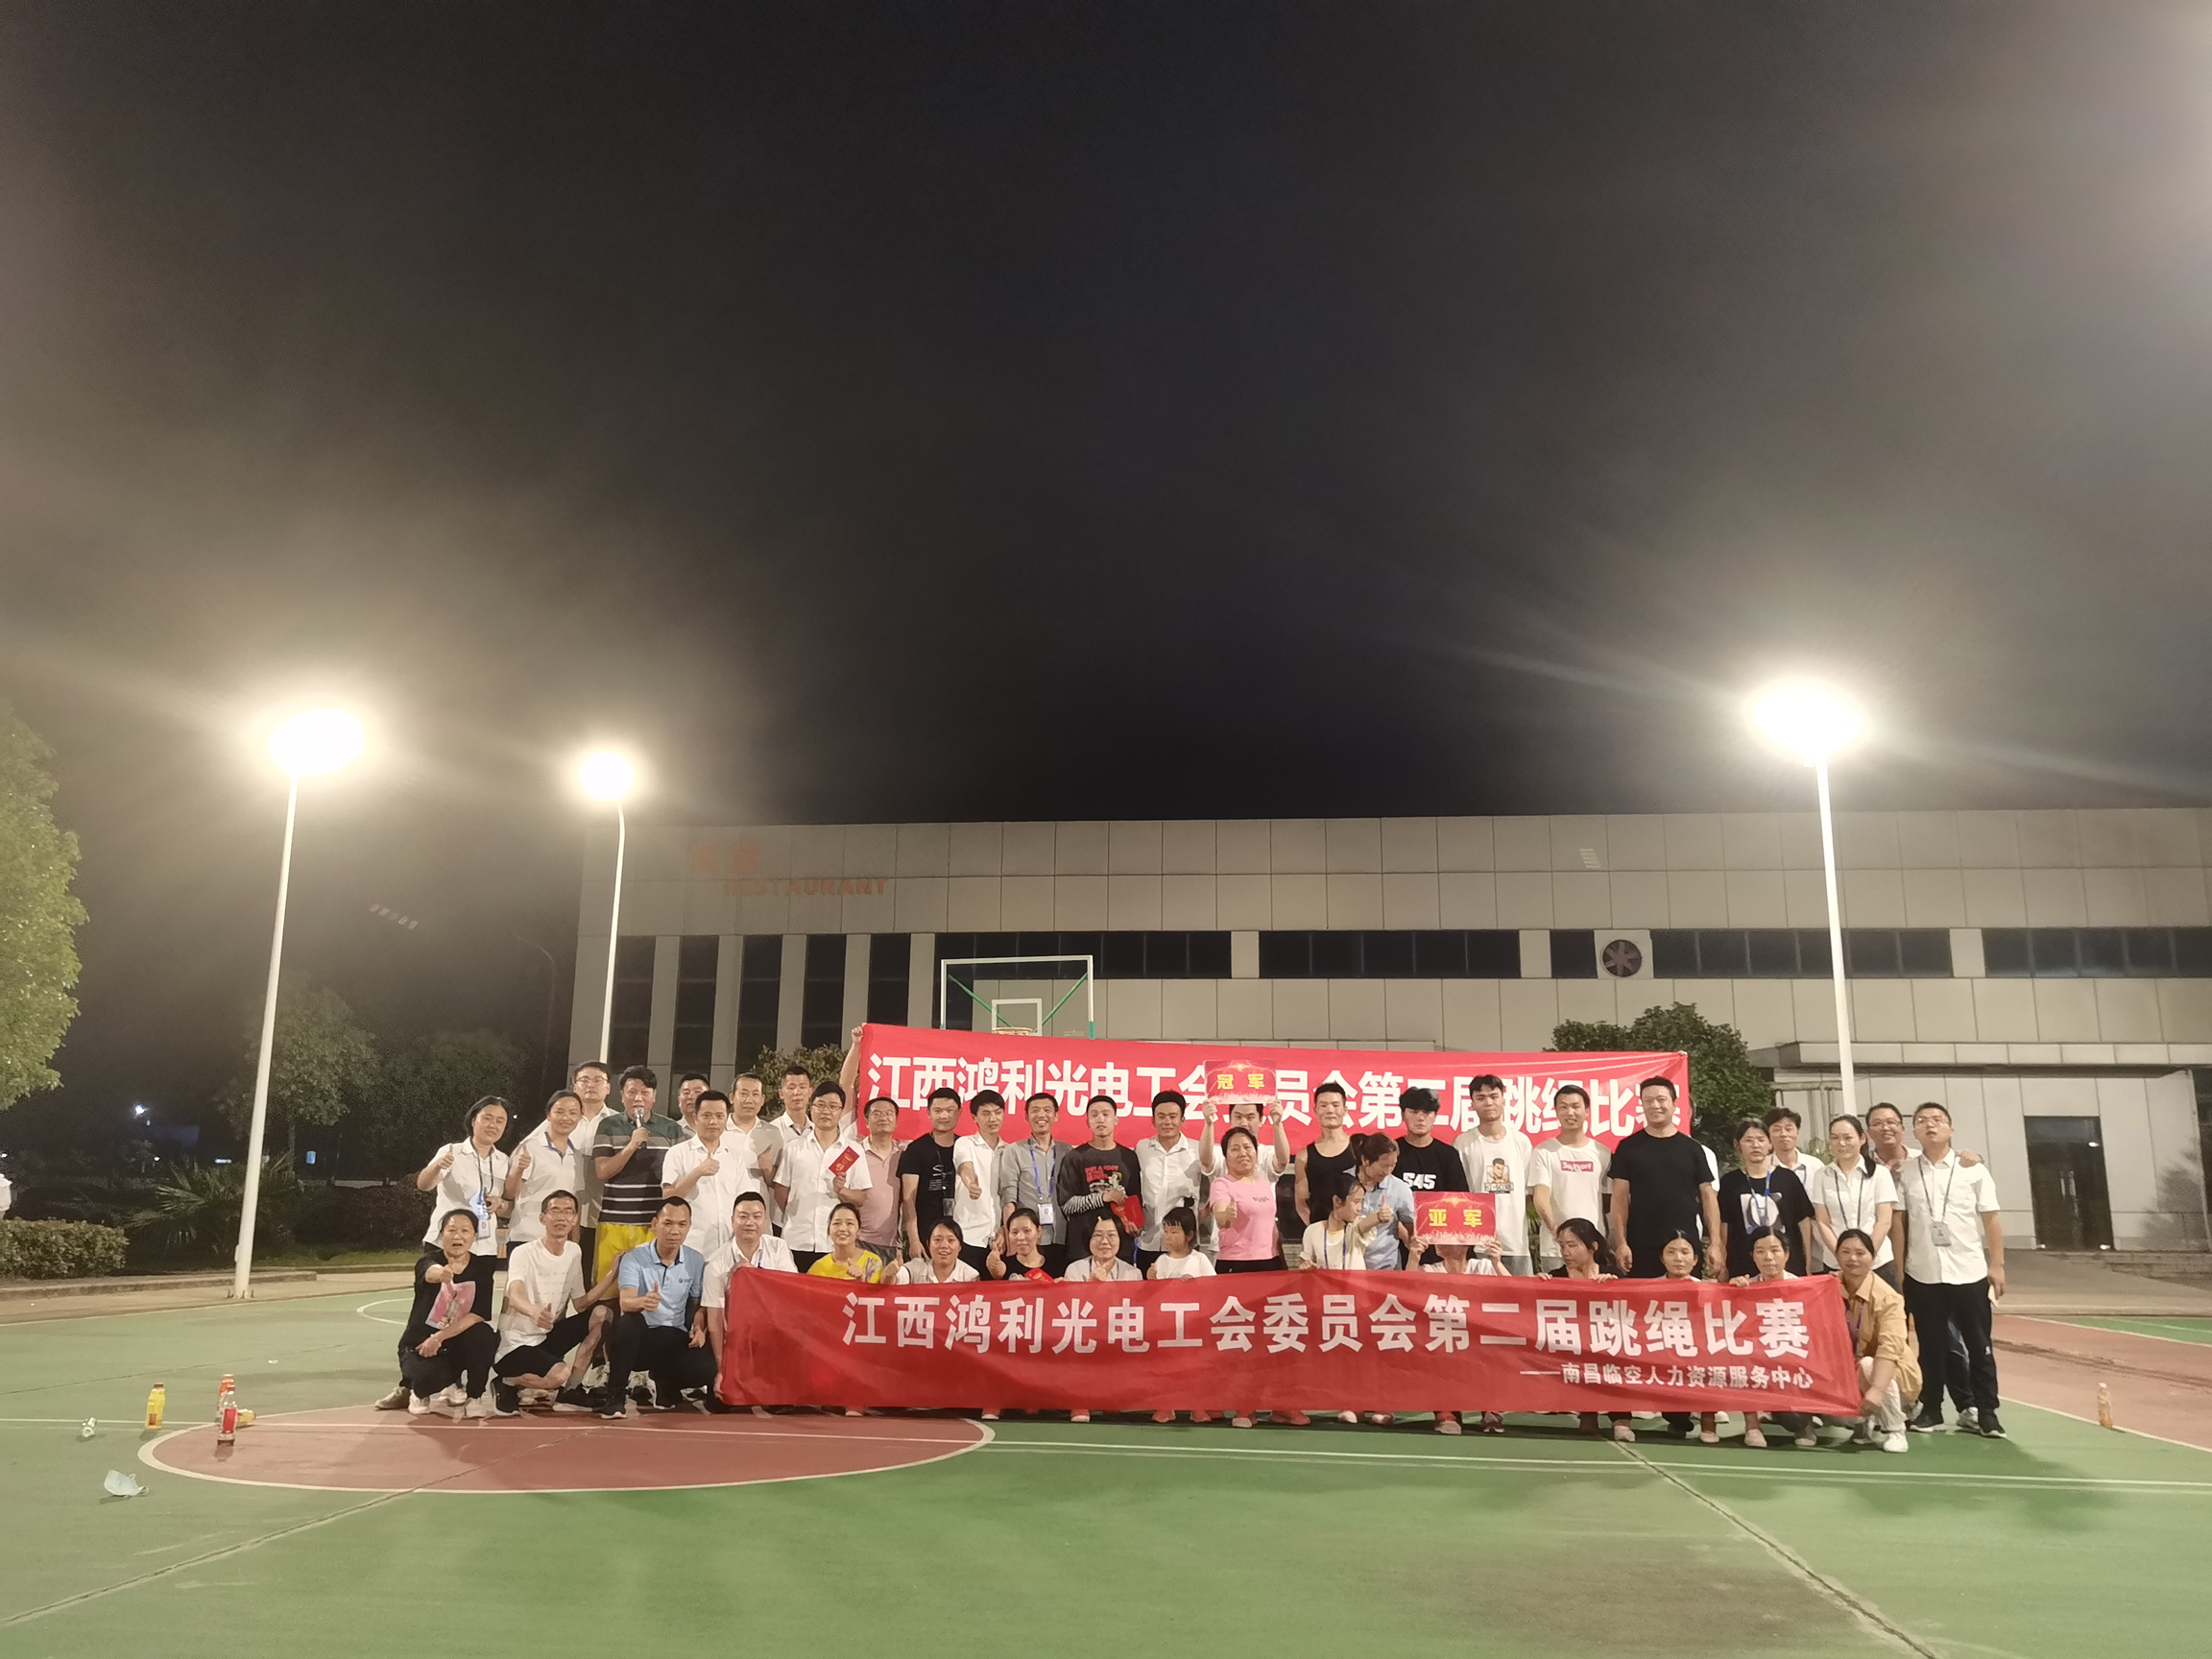 持續打造品質向上文化——江西鴻利舉辦第二屆跳繩比賽